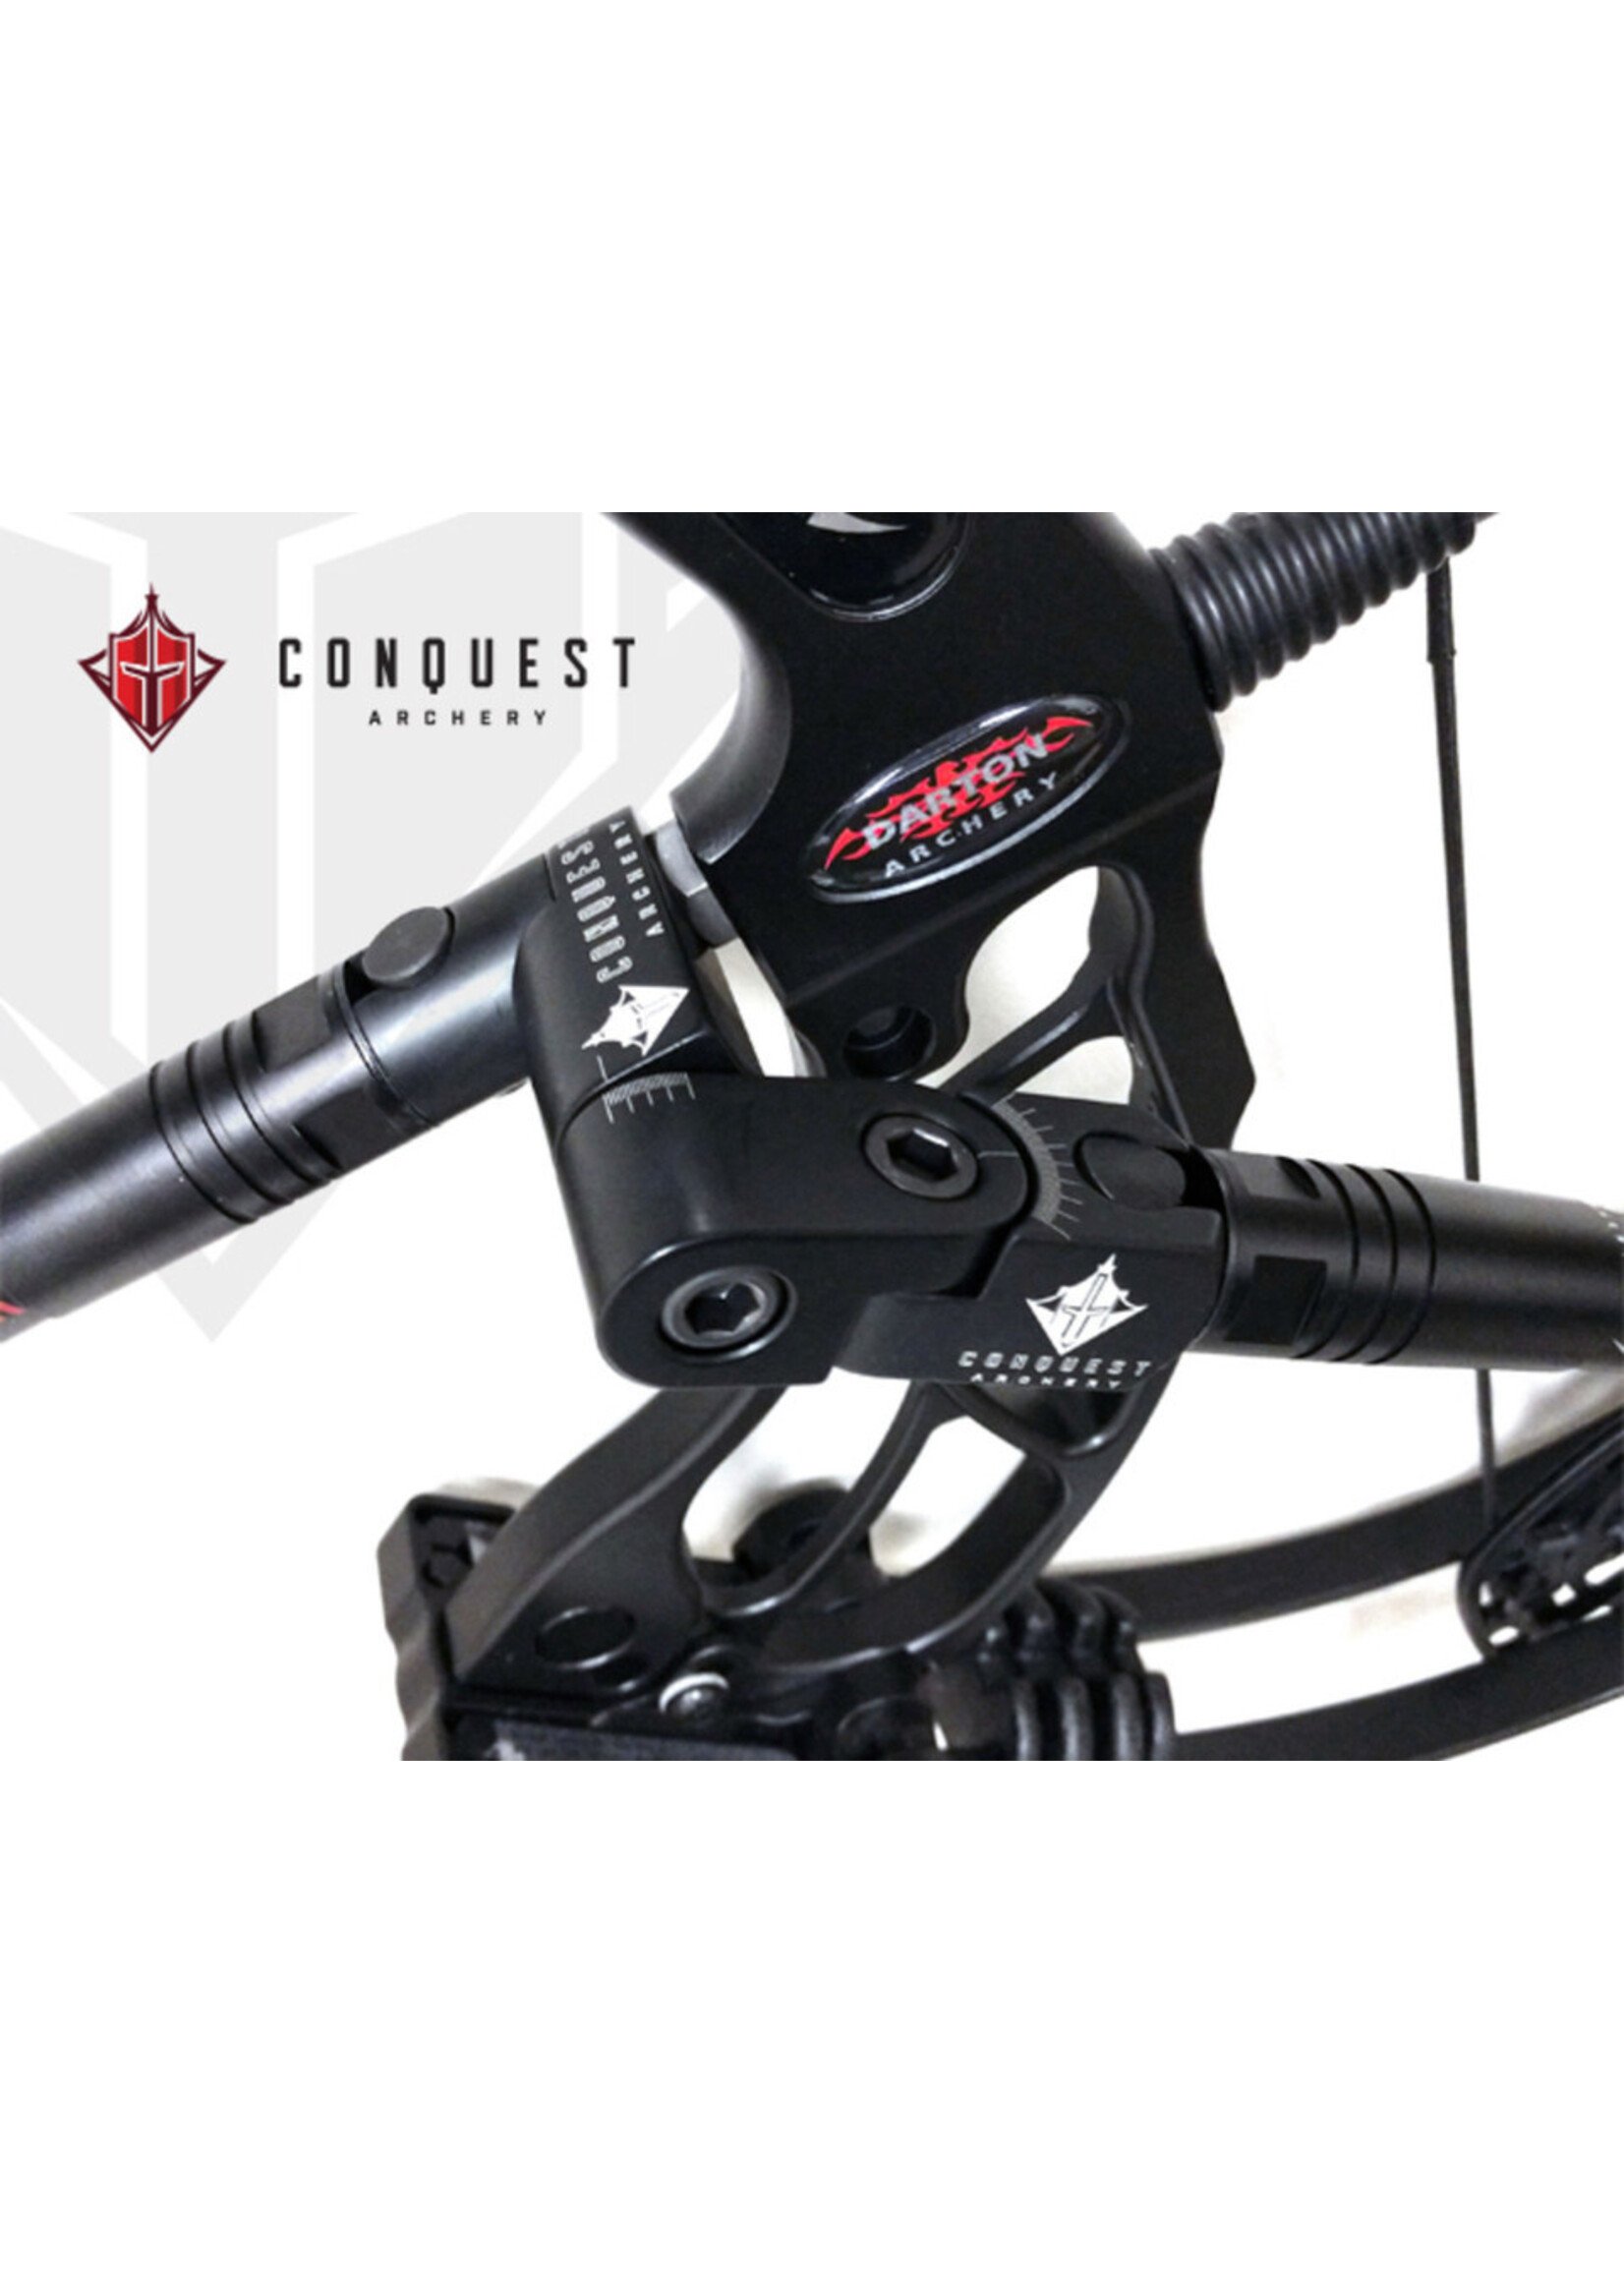 Conquest Archery Conquest Control Freak 750 Kit